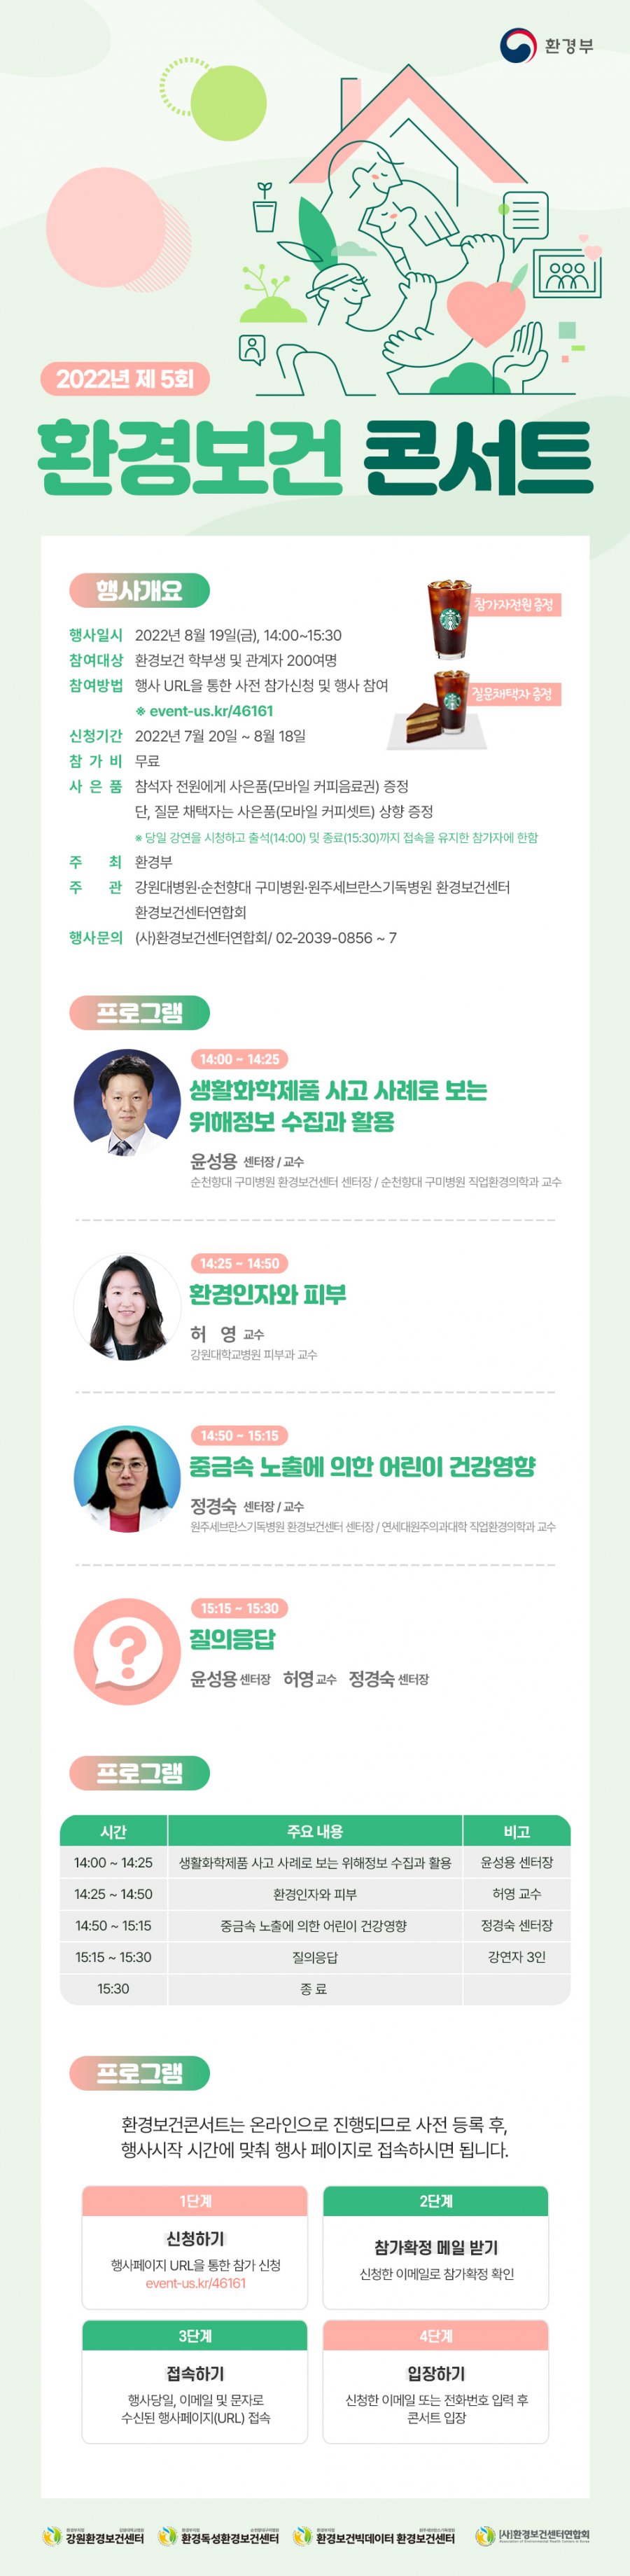 제 5회 환경보건콘서트 개최